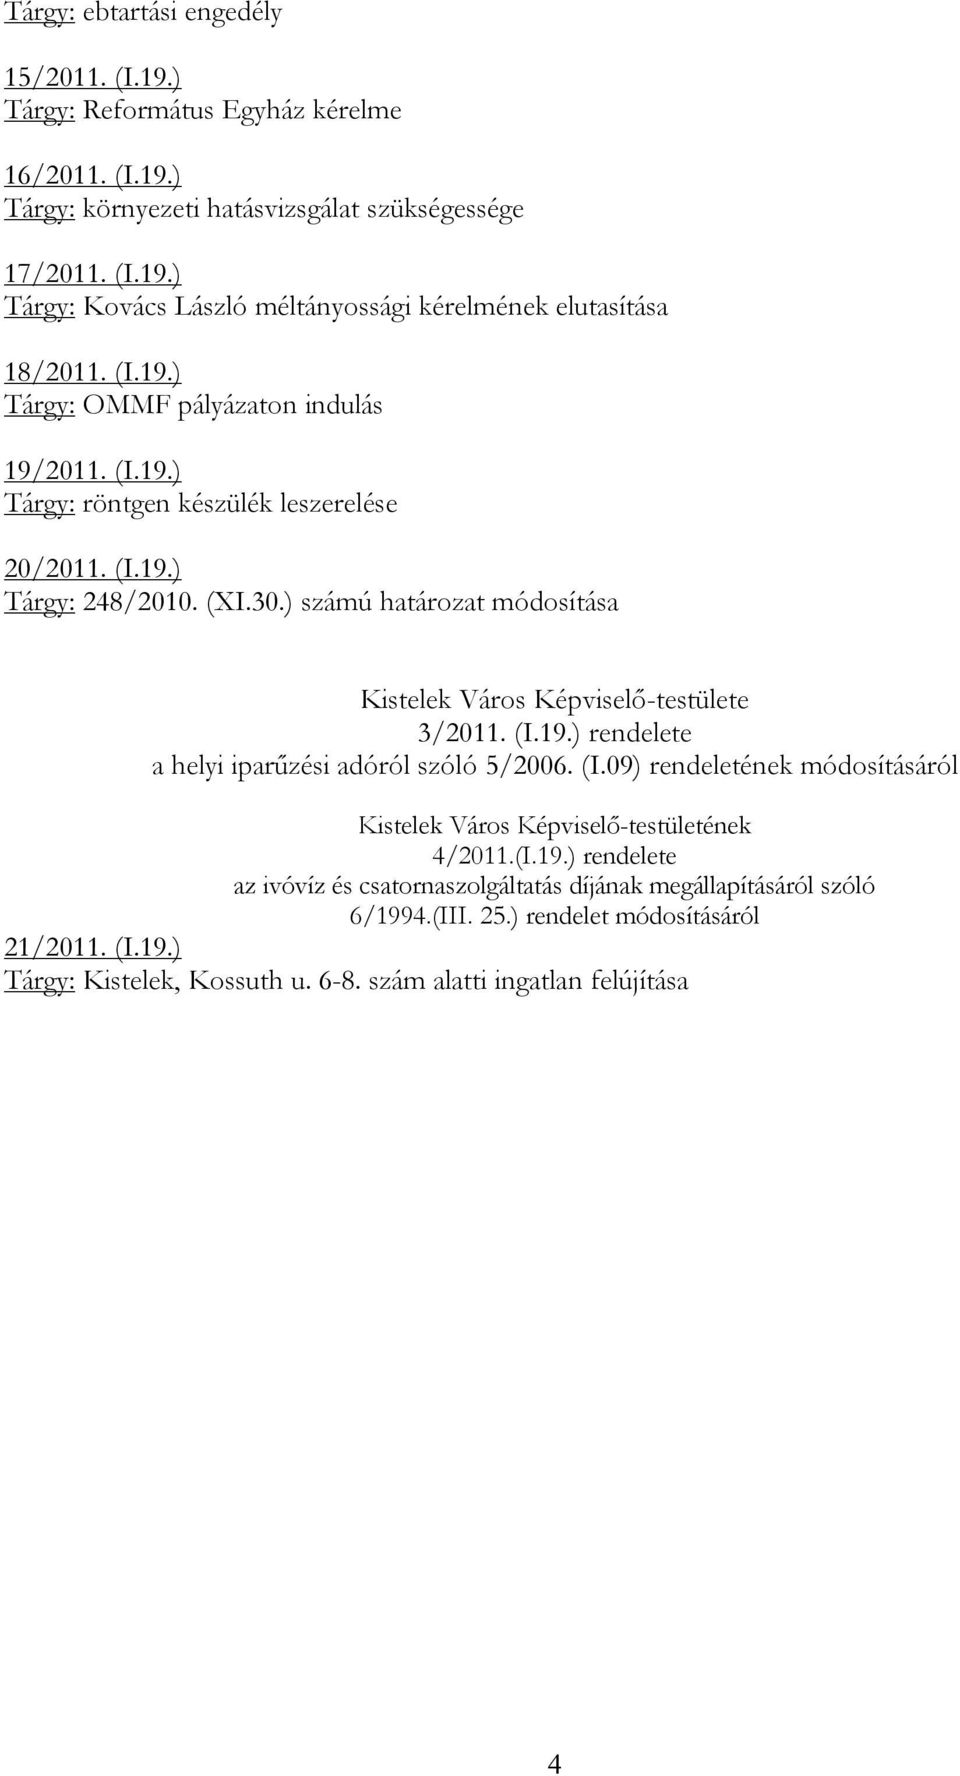 ) számú határozat módosítása Kistelek Város Képviselő-testülete 3/2011. (I.19.) rendelete a helyi iparűzési adóról szóló 5/2006. (I.09) rendeletének módosításáról Kistelek Város Képviselő-testületének 4/2011.